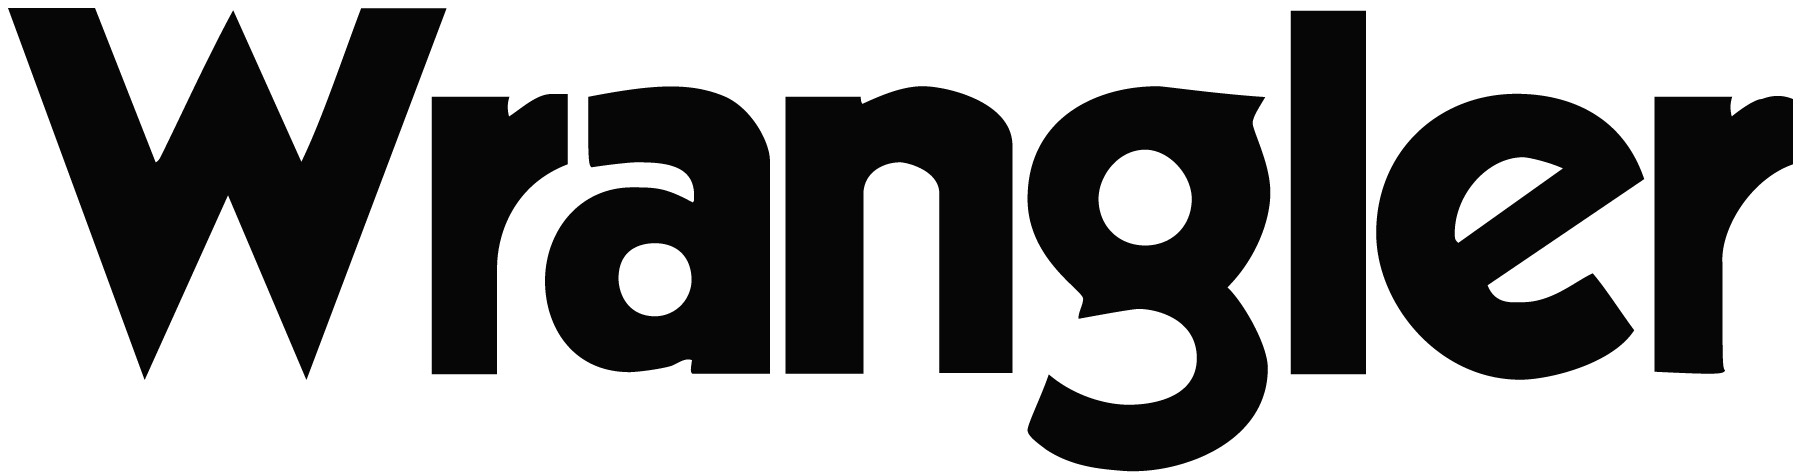 Wrangler logo-1.jpg